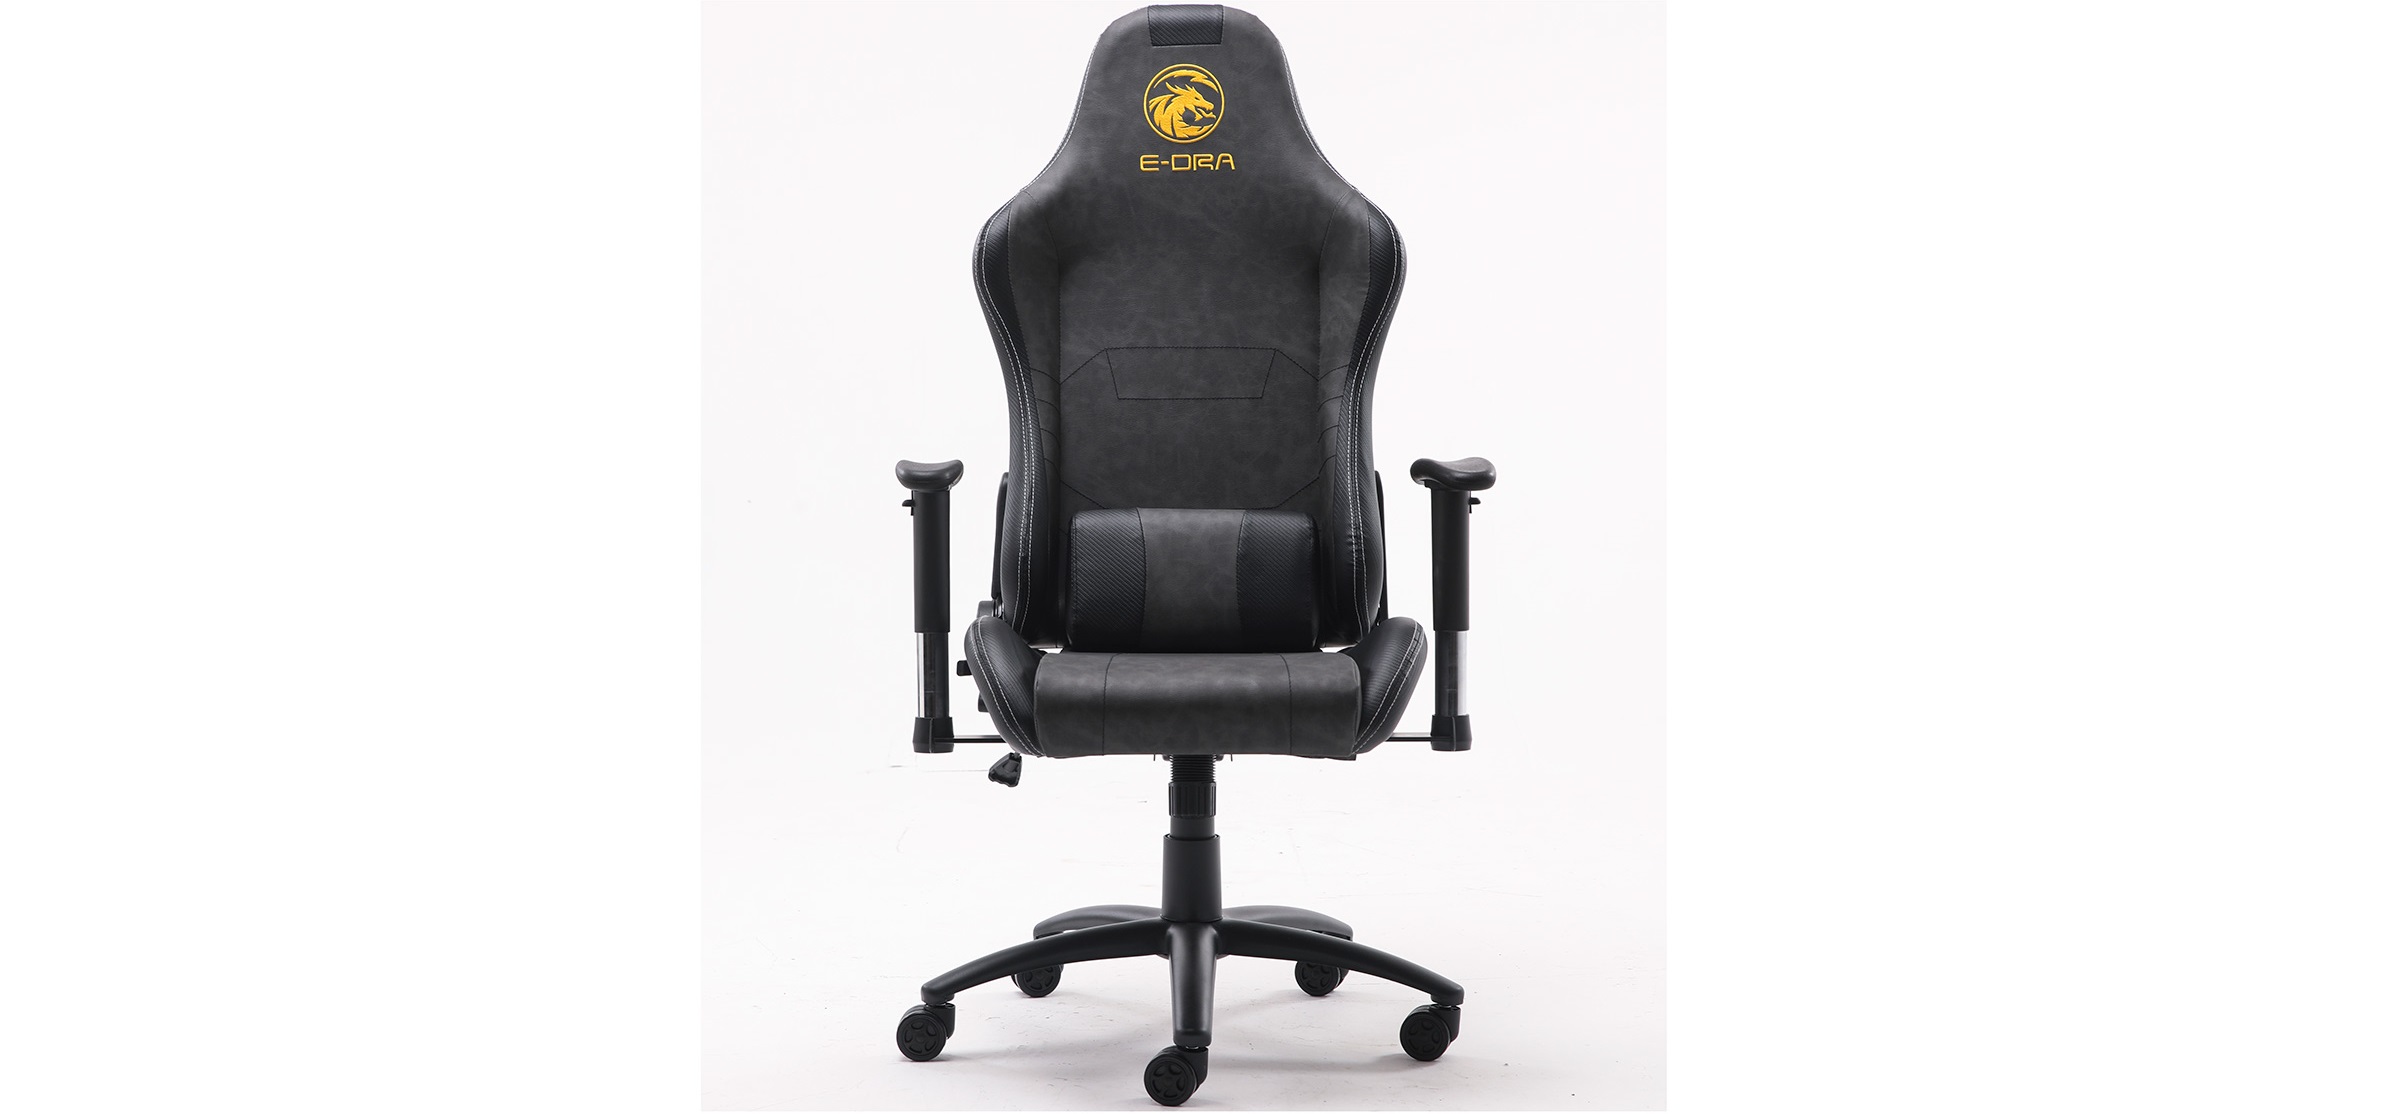 Ghế Gamer E-Dra Midtnight Gaming Chair Black/Gray (EGB025) trang bị da PU với độ bền cao